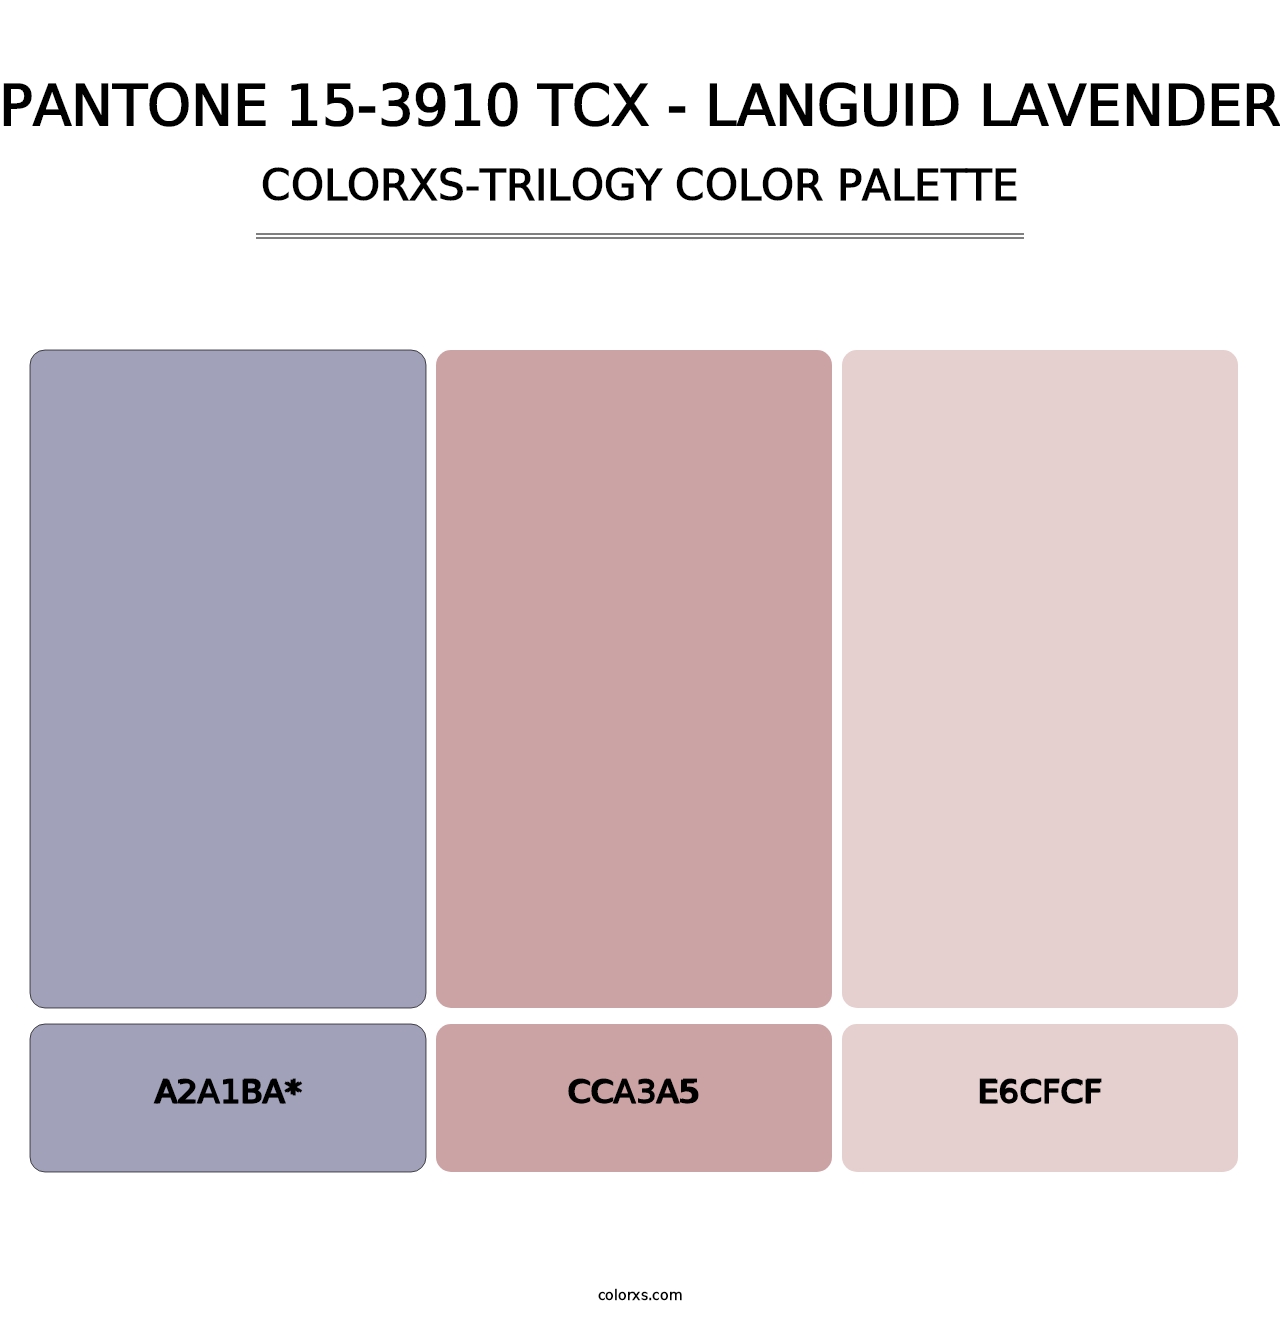 PANTONE 15-3910 TCX - Languid Lavender - Colorxs Trilogy Palette